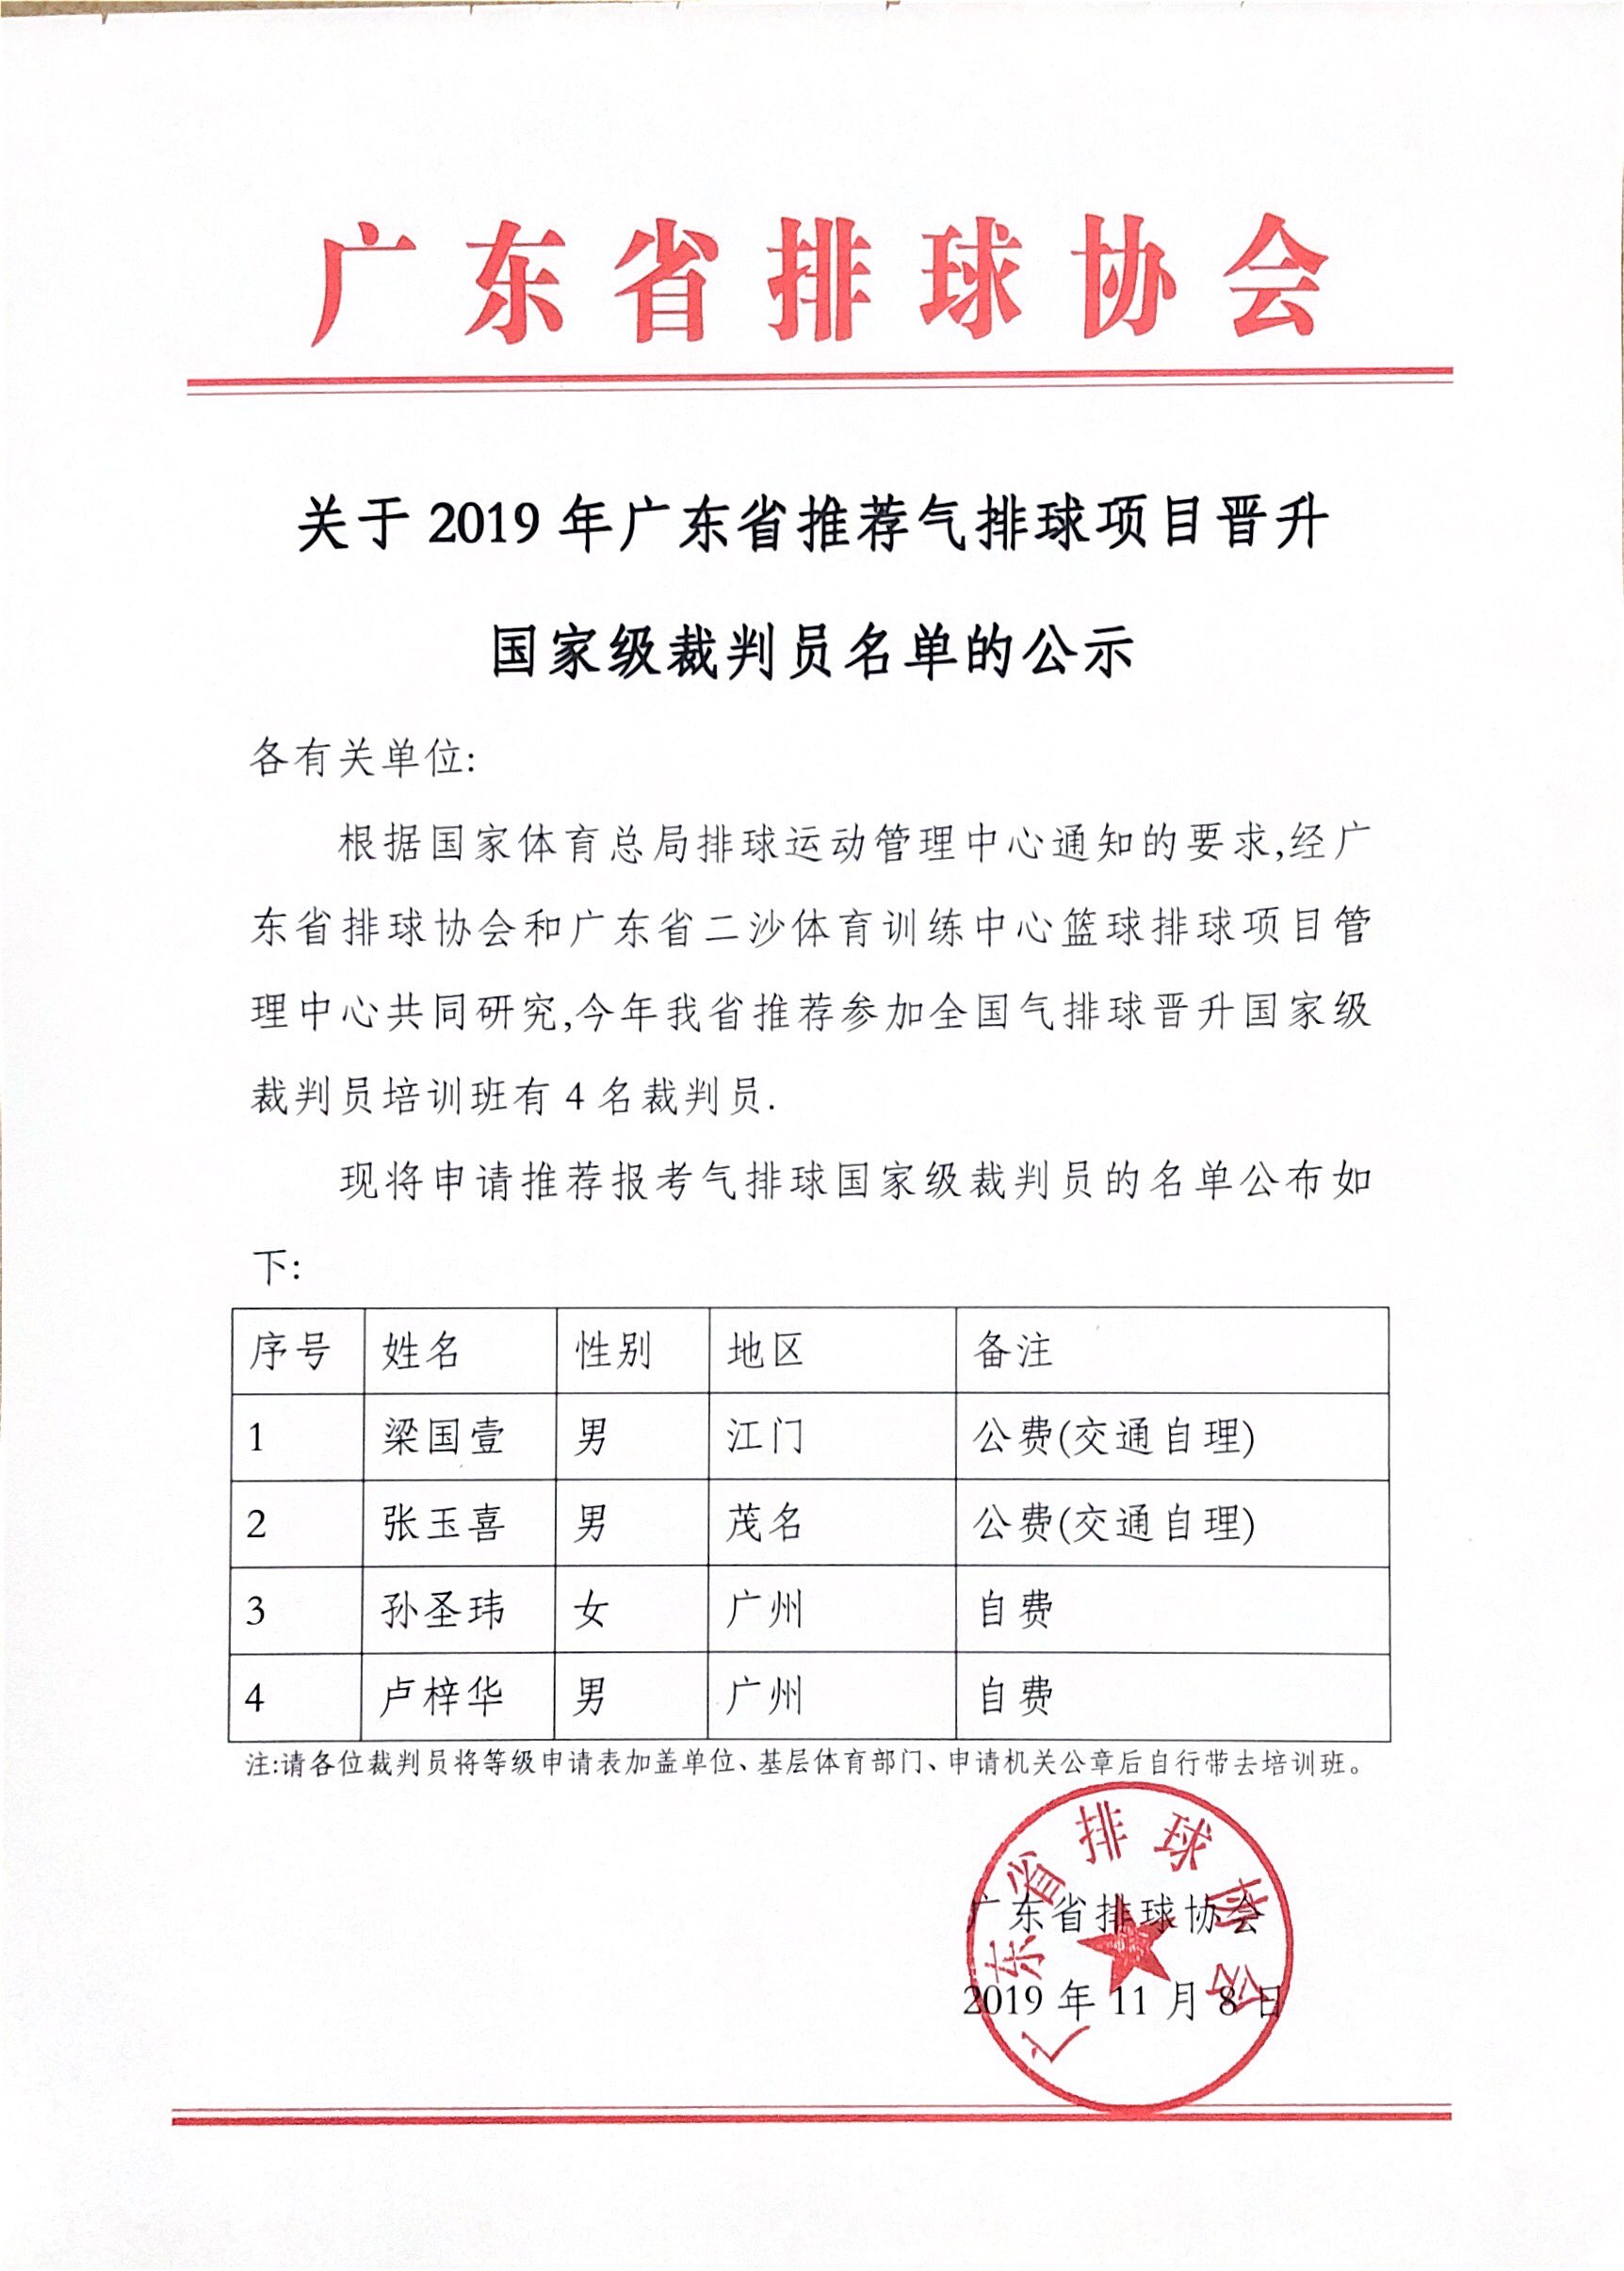 关于2019年广东省推荐气排球项目晋升国家级裁判员名单的公示.jpg